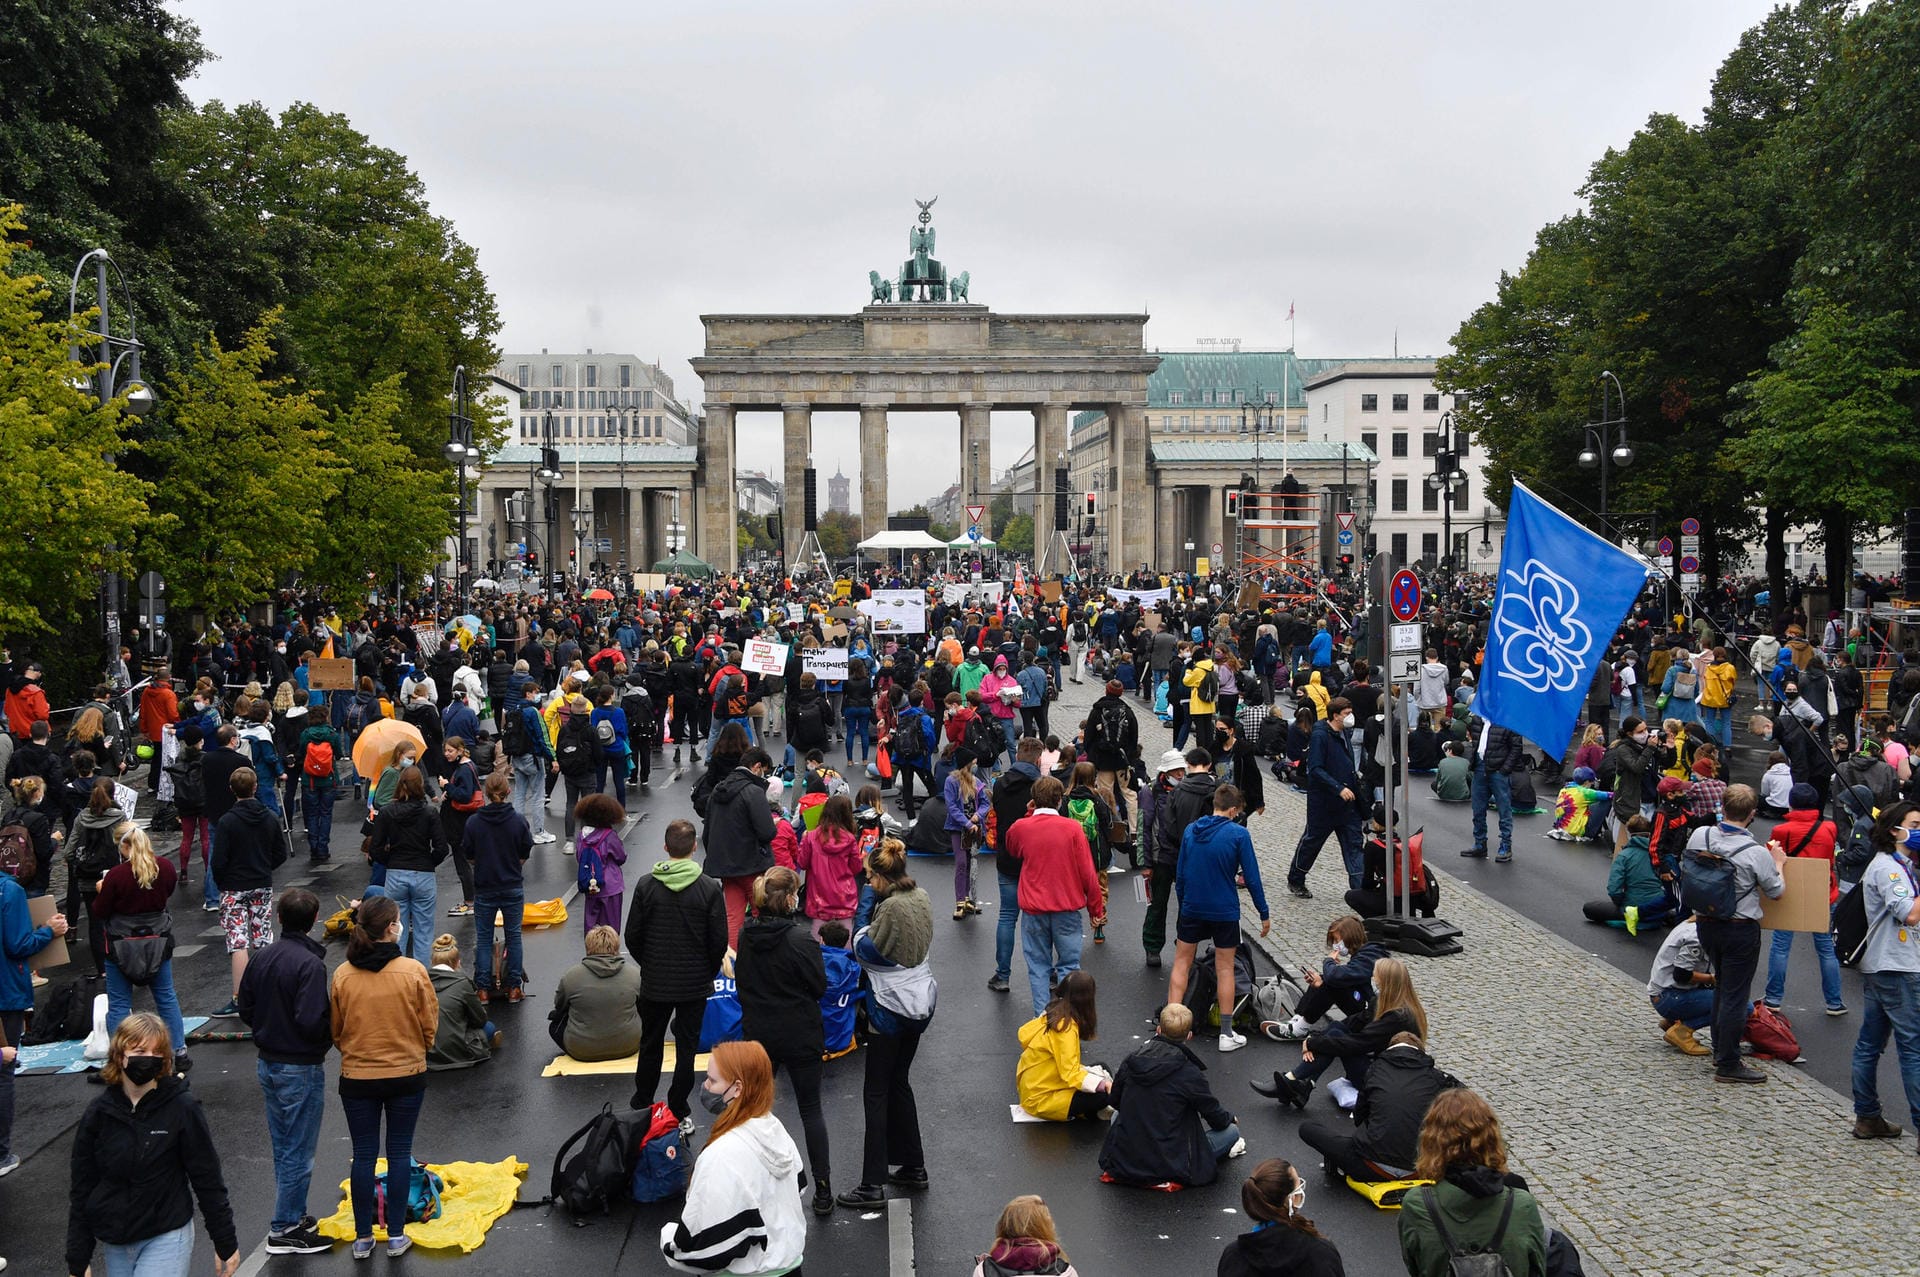 Berlin: Protestierende sitzen vor dem Brandenburger Tor am Boden. Zuvor wurden auf dem Asphalt Punkte markiert, auf denen sich die Teilnehmenden niederlassen sollten, um den Abstand einzuhalten.